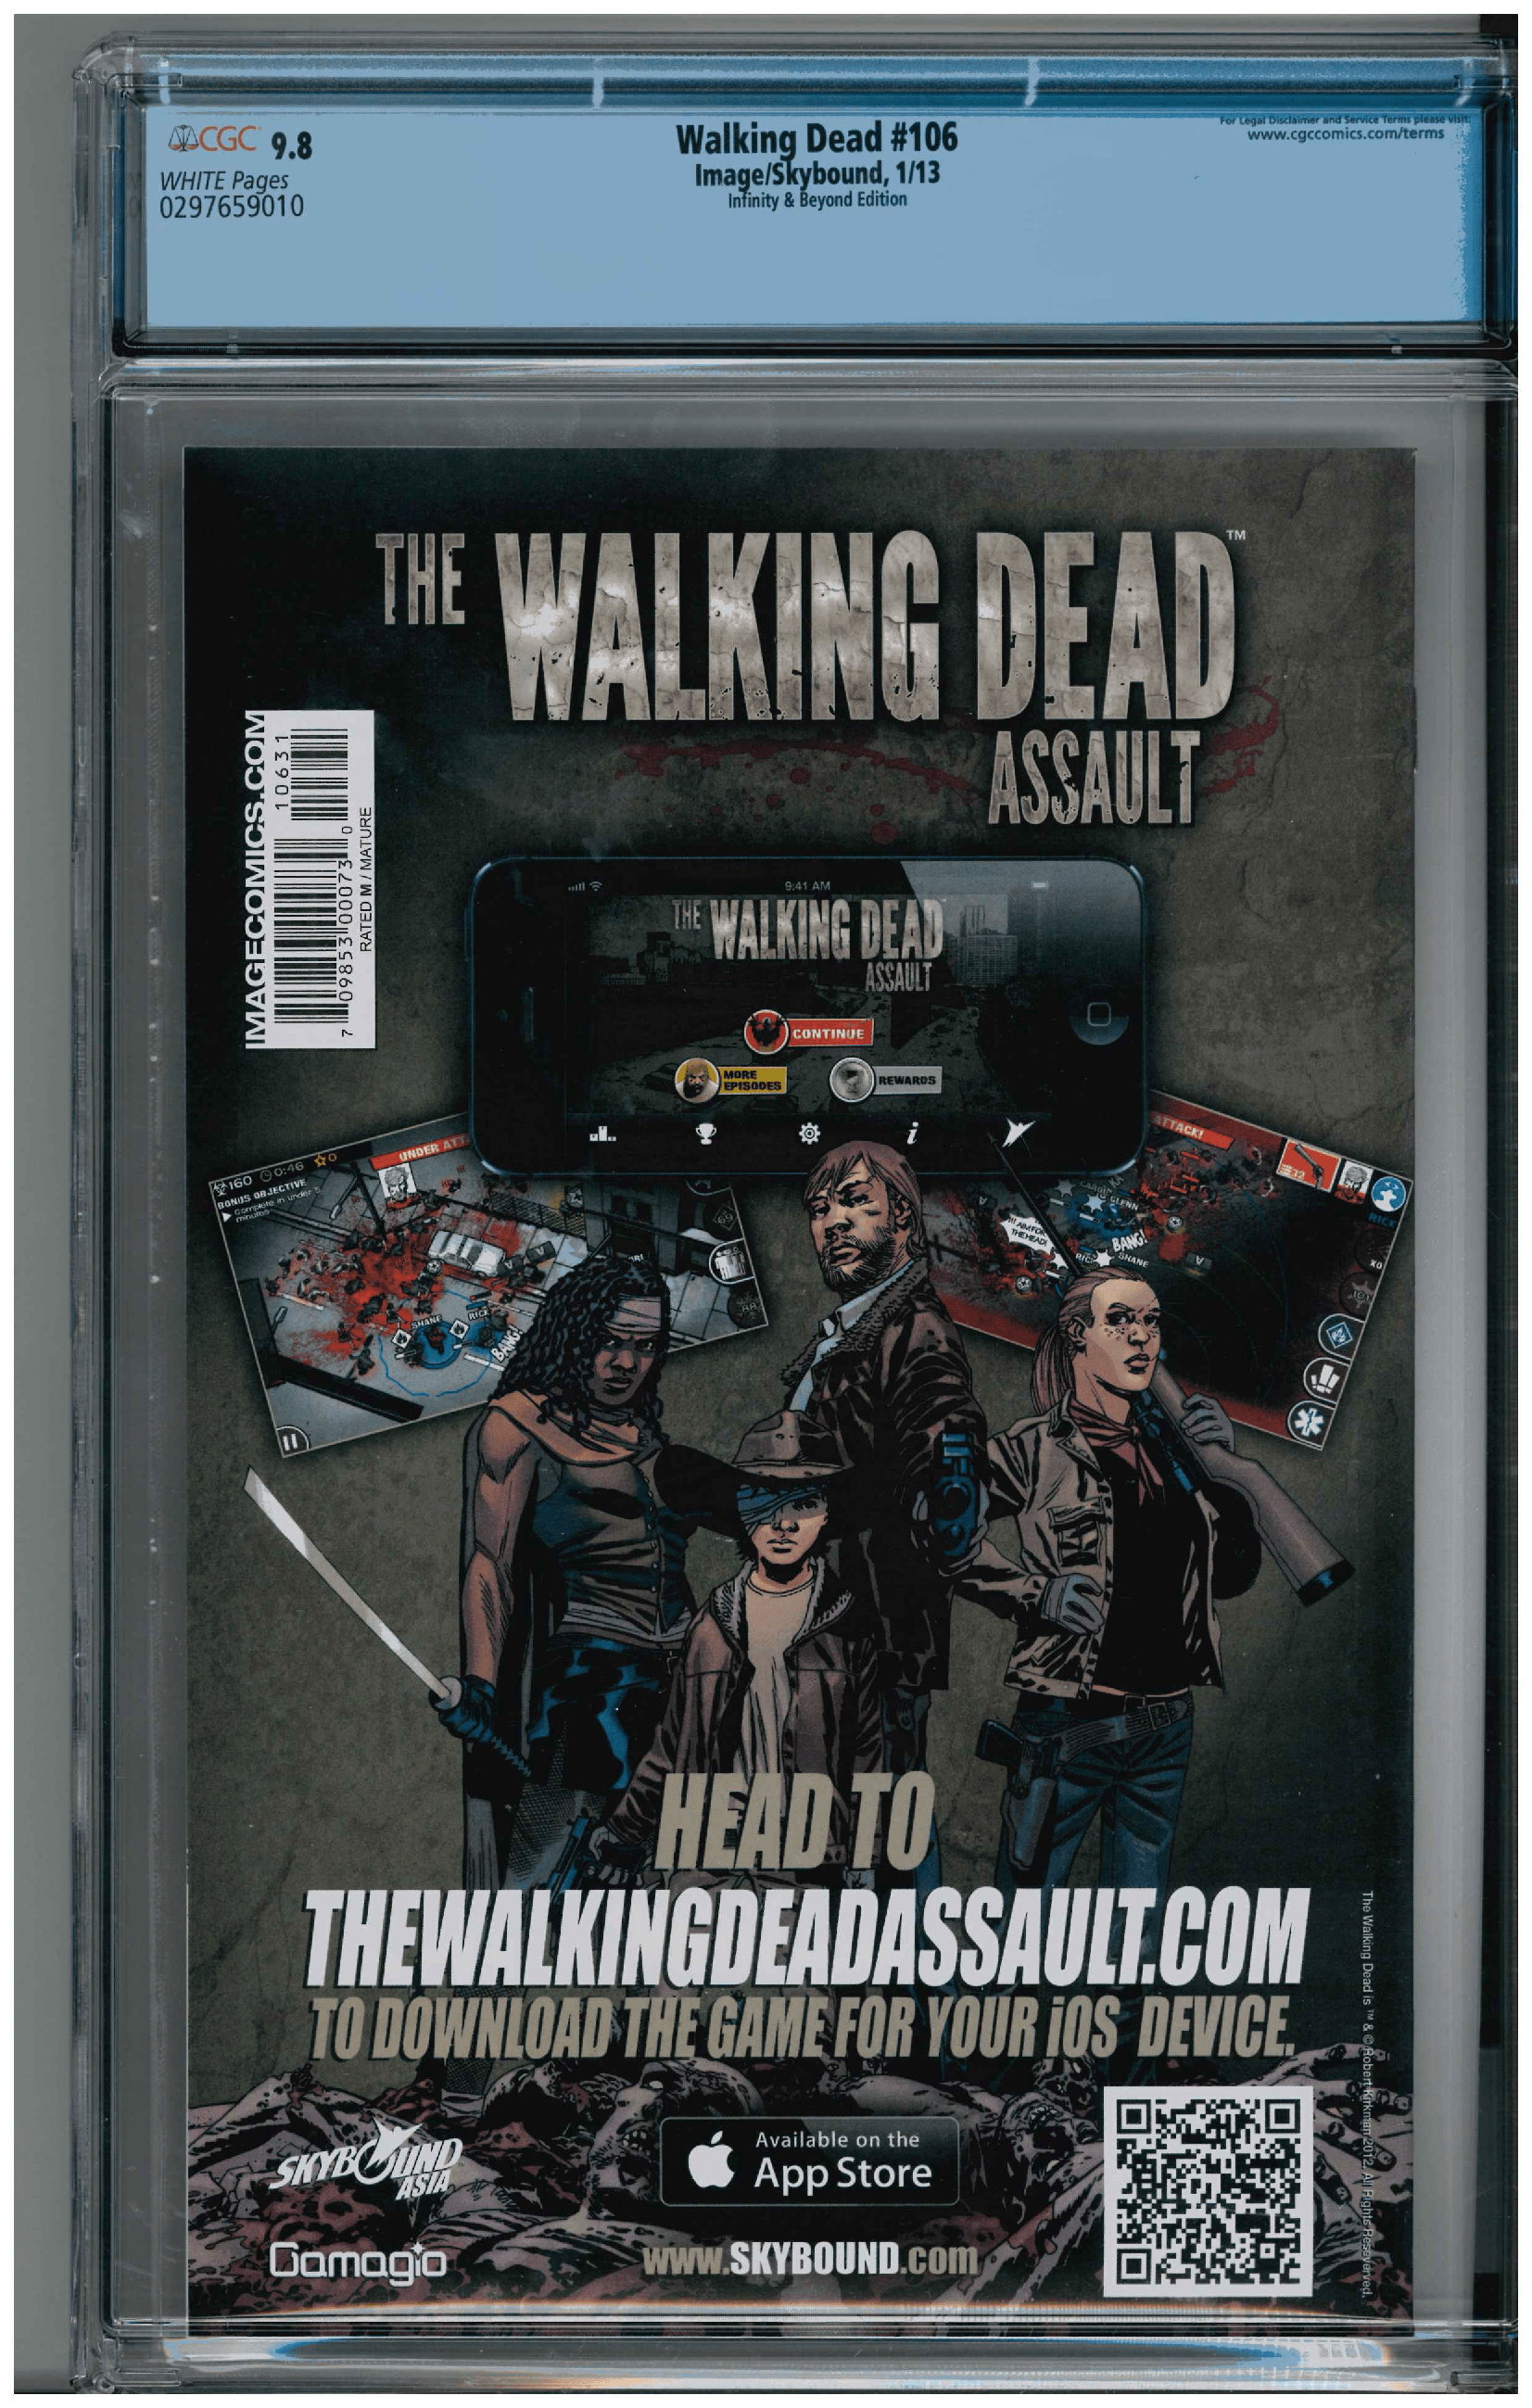 Walking Dead #106 backside